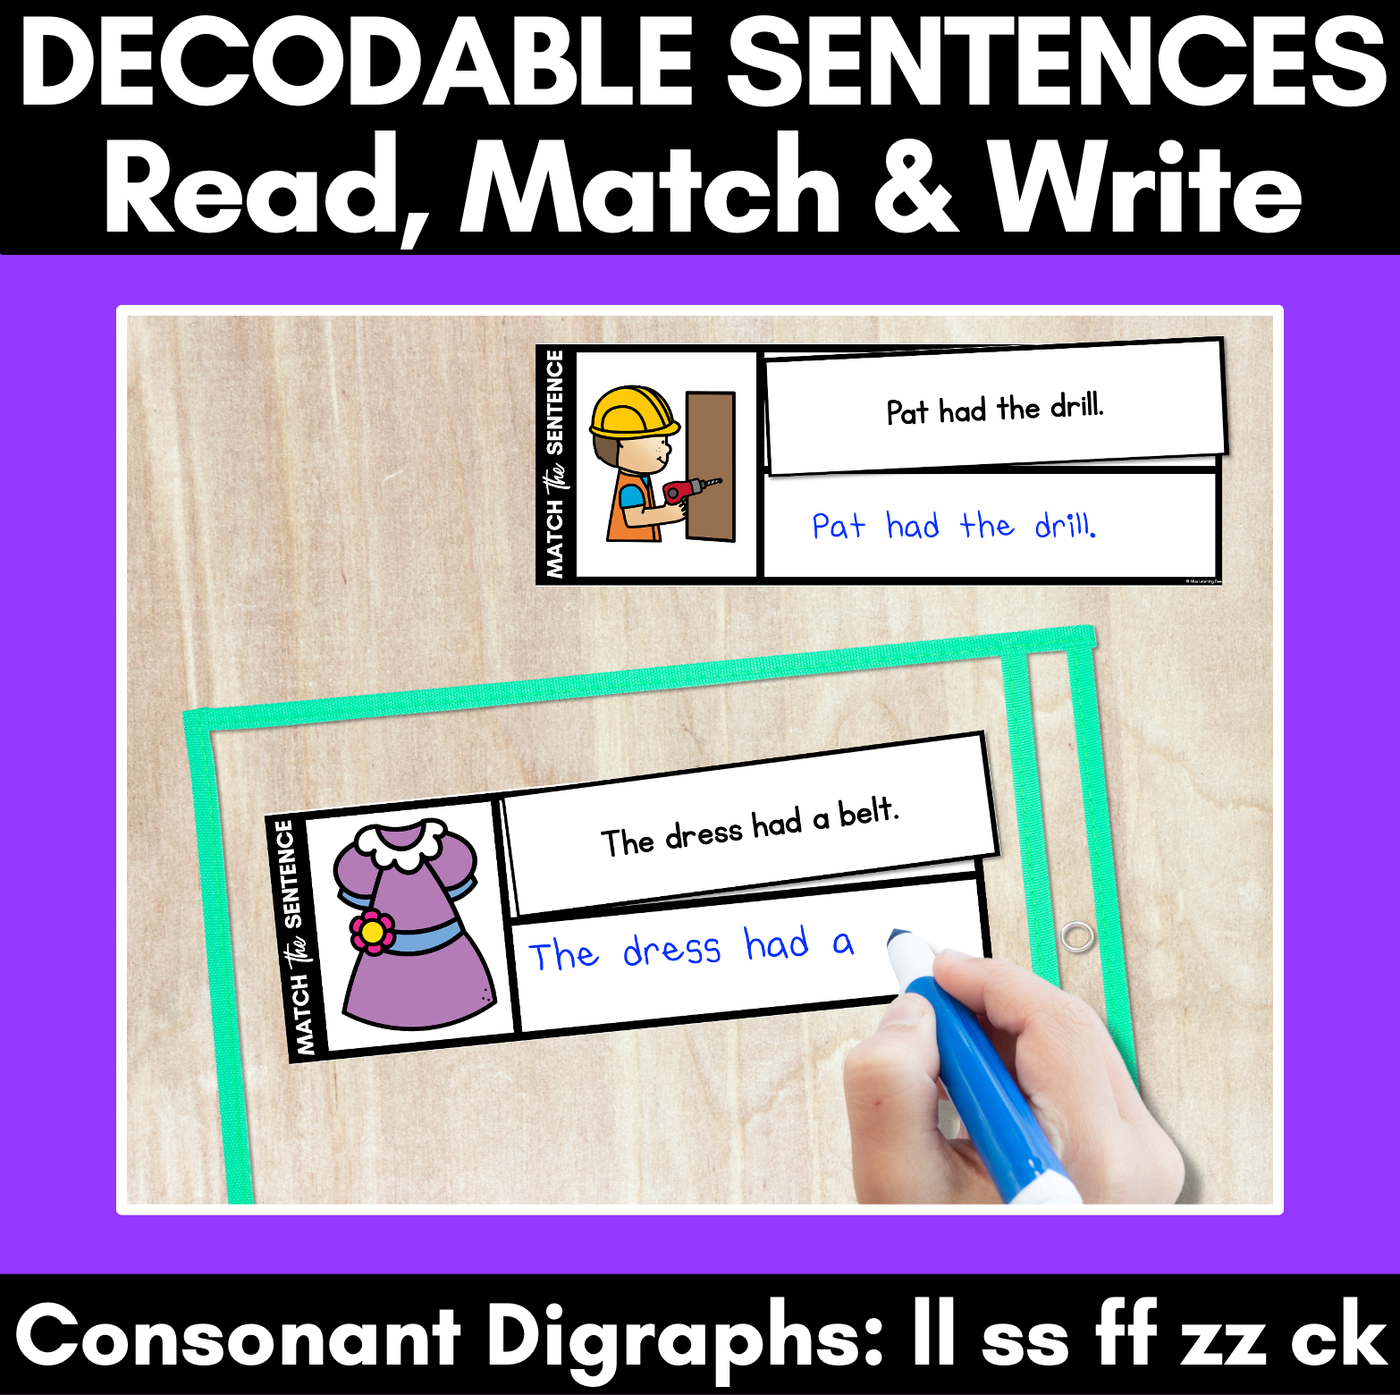 LL SS FF ZZ CK Decodable Sentences - Read, Match & Write